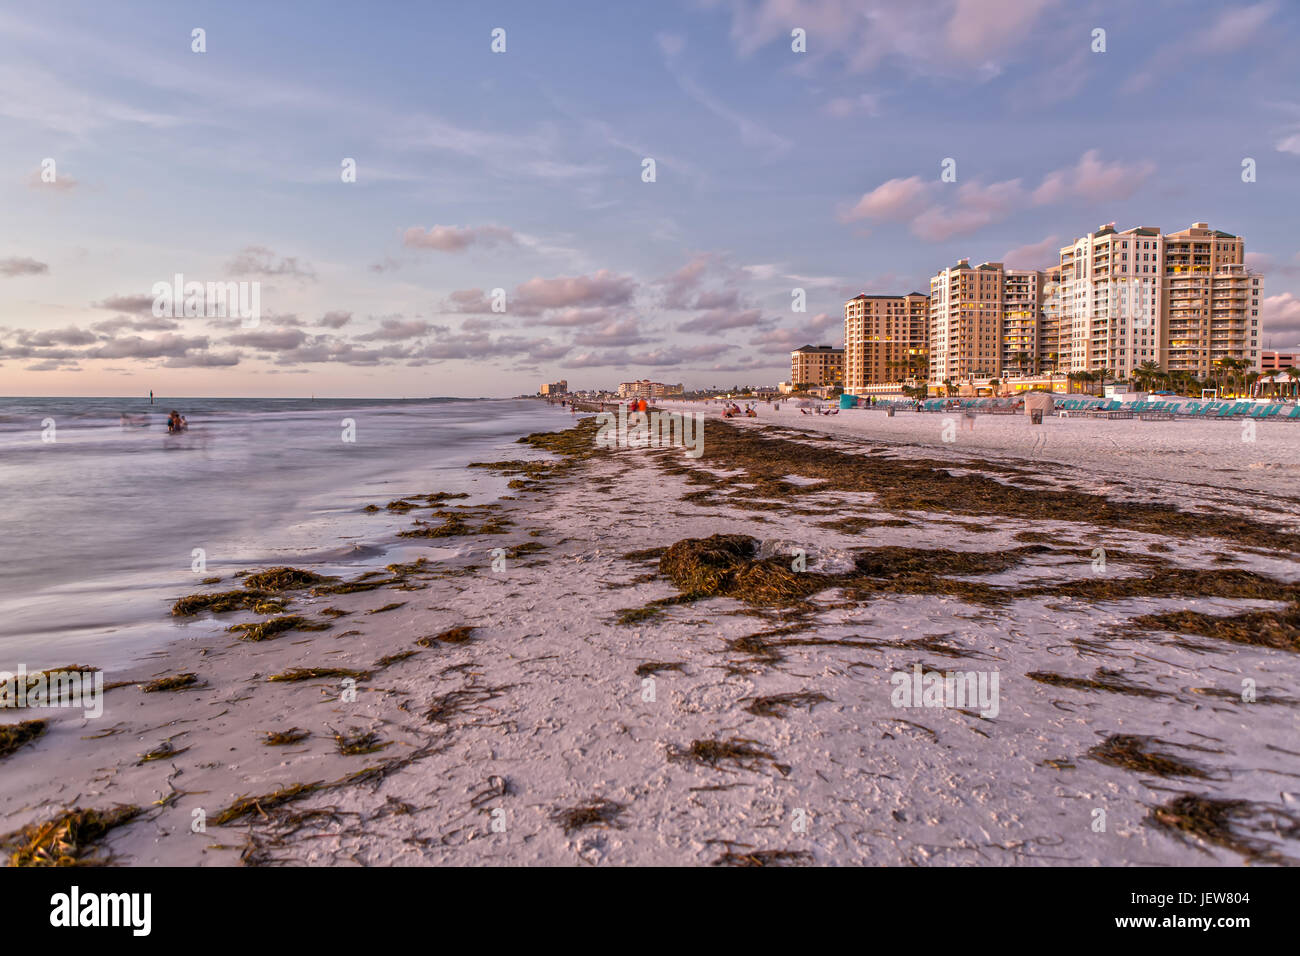 La plage de Clearwater en Floride au coucher du soleil Banque D'Images